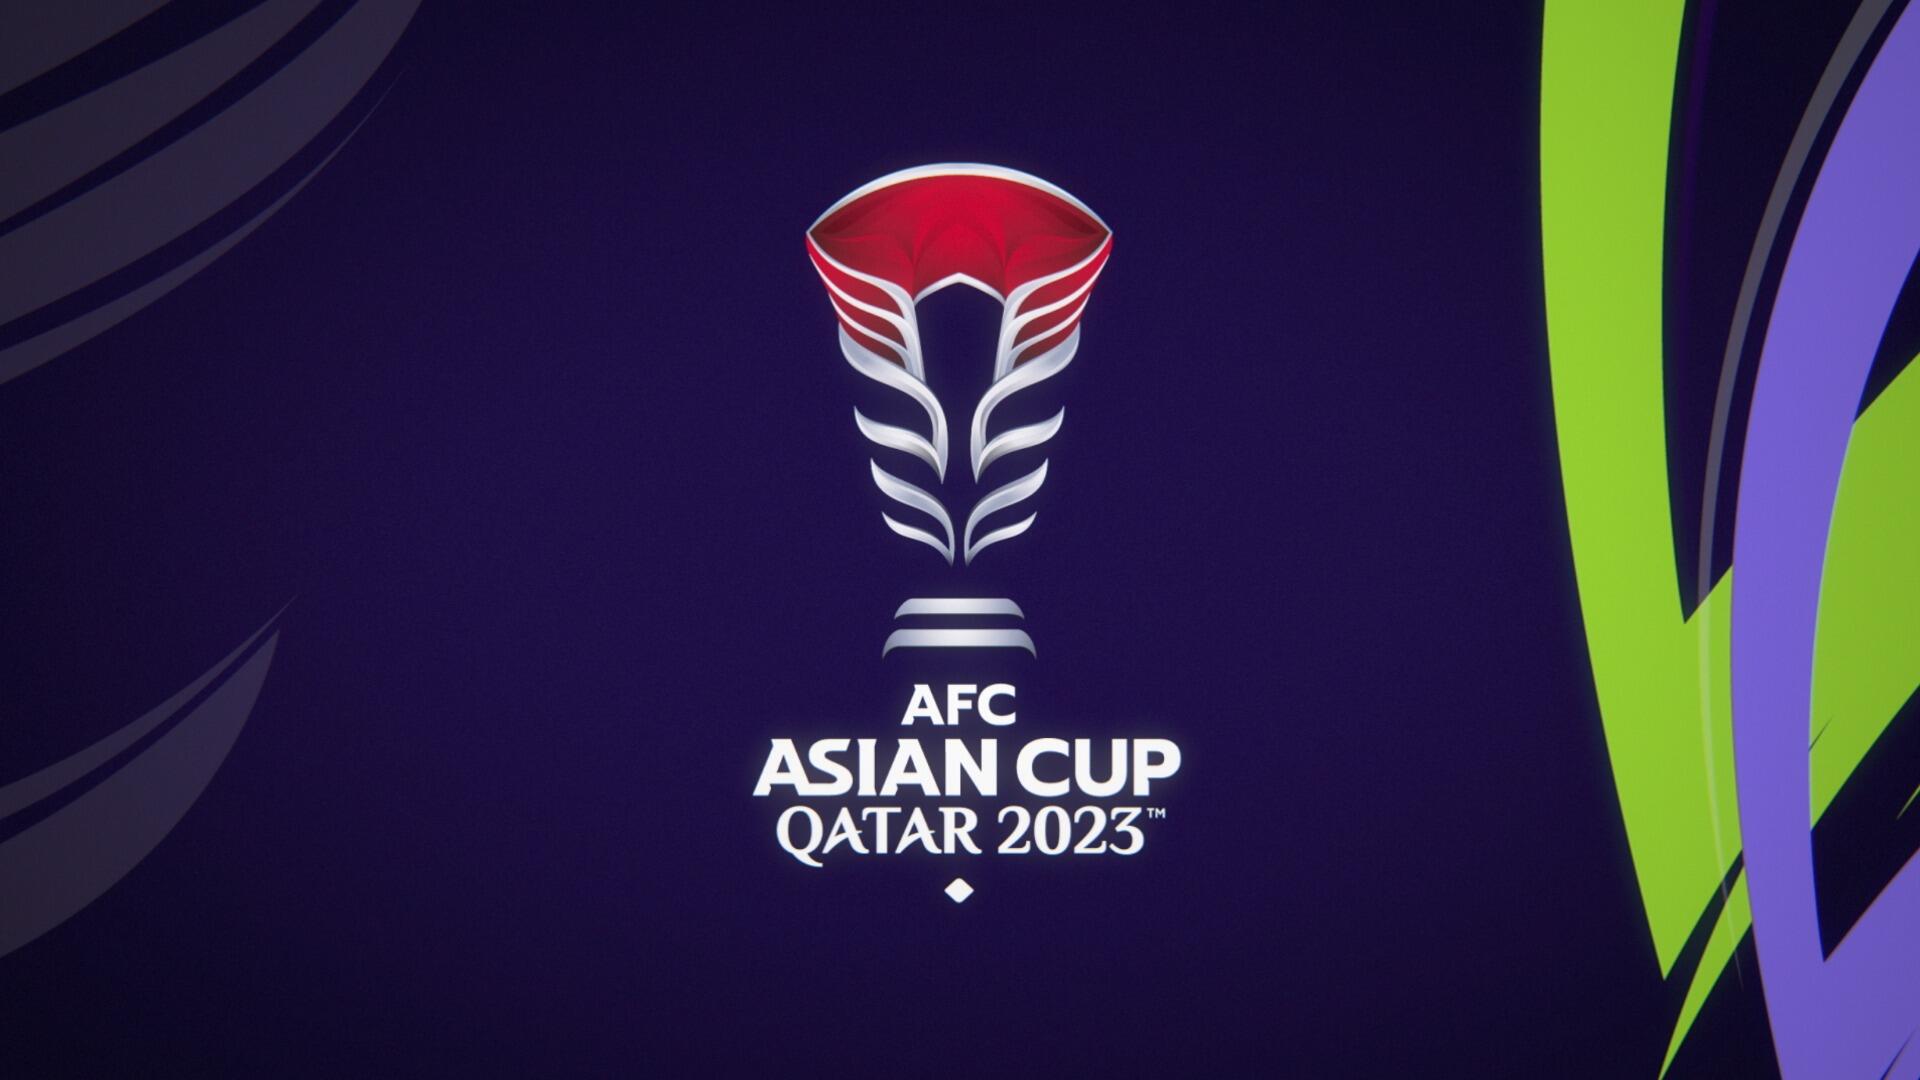 كأس آسيا 2023 في قطر: كشف الشعار